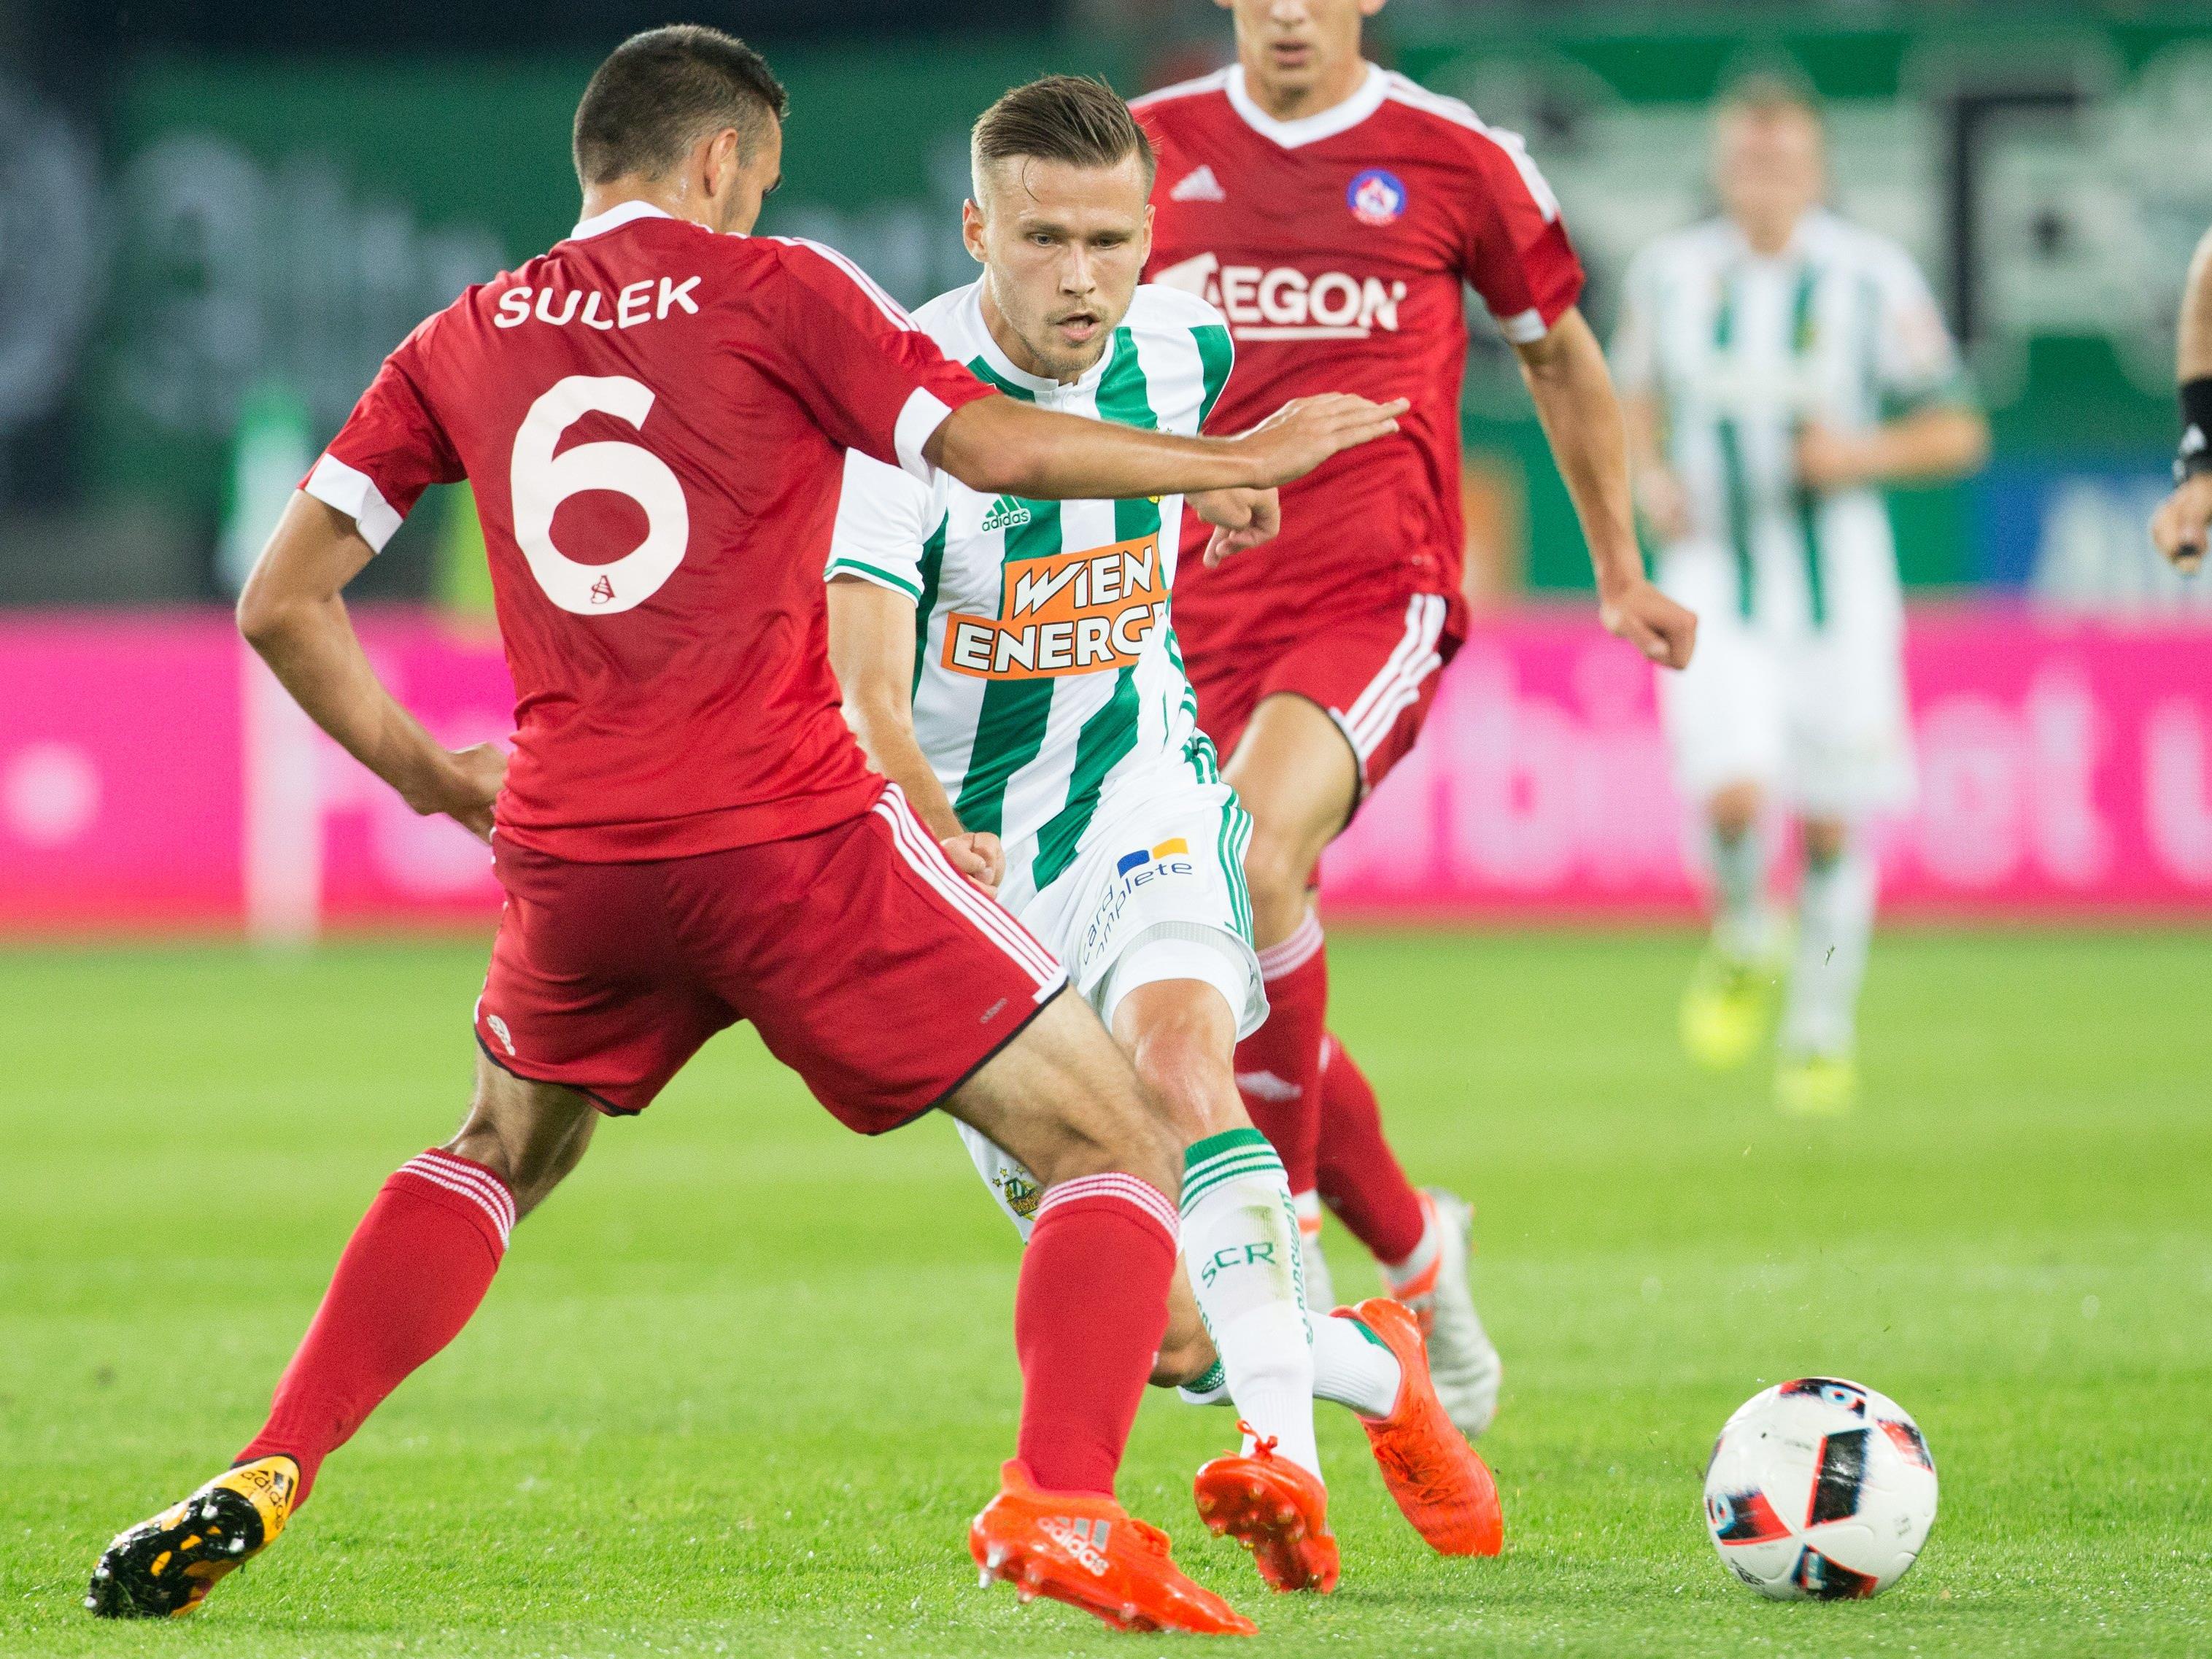 Rapid stolperte im Rückspiel gegen Trenčín, stieg mit dem Gesamtscore von 4:2 aber dennoch in die Gruppenphase der Europa League auf.